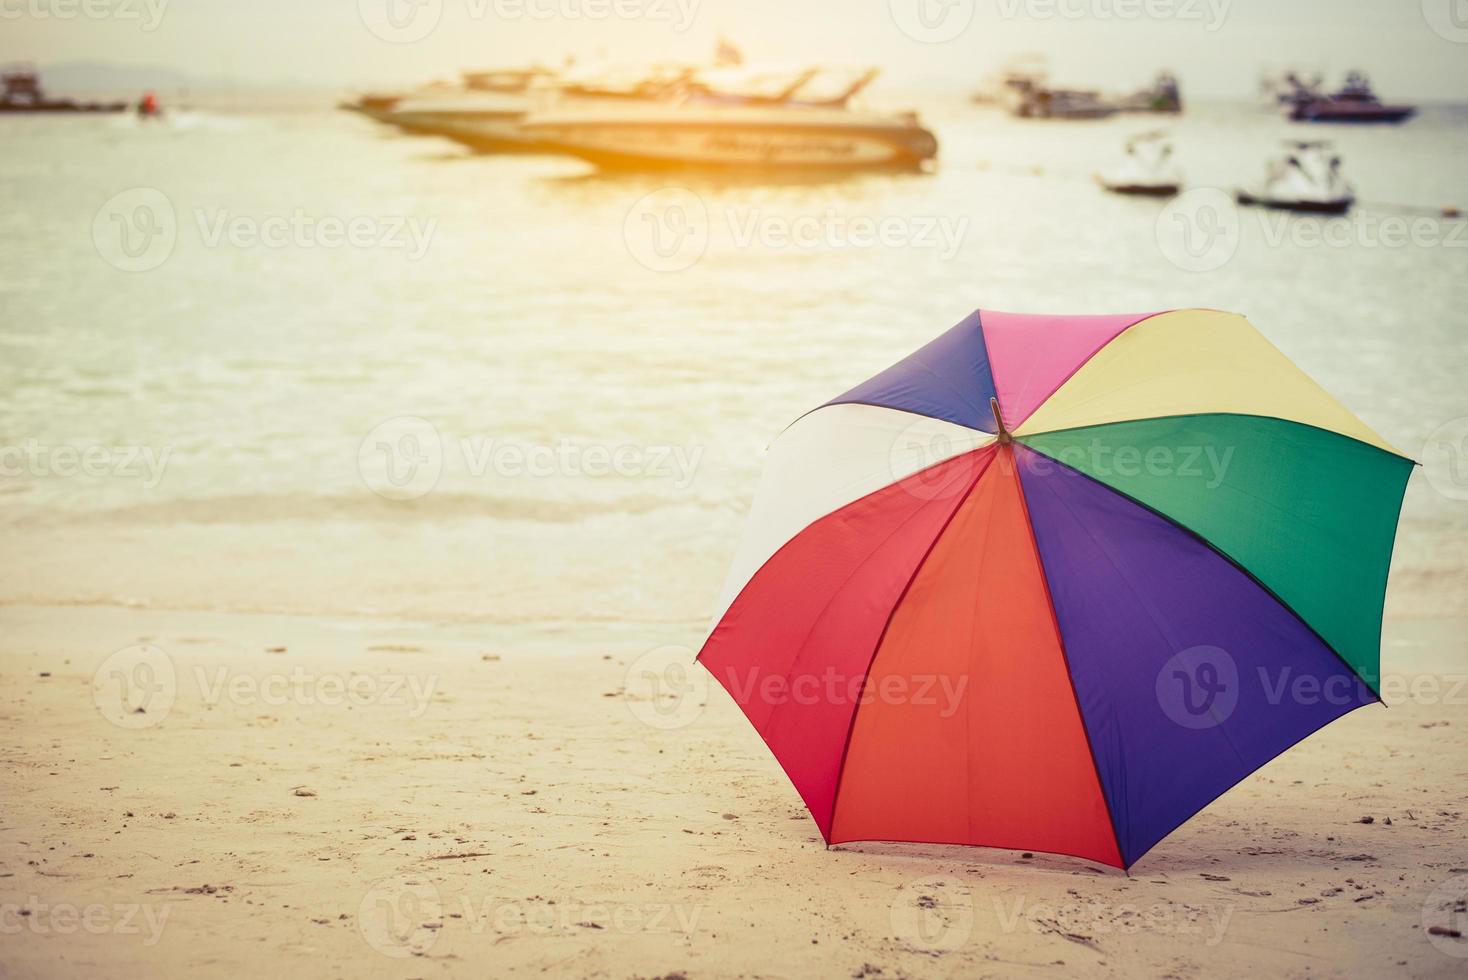 guarda-chuva colorido do arco-íris na praia foto